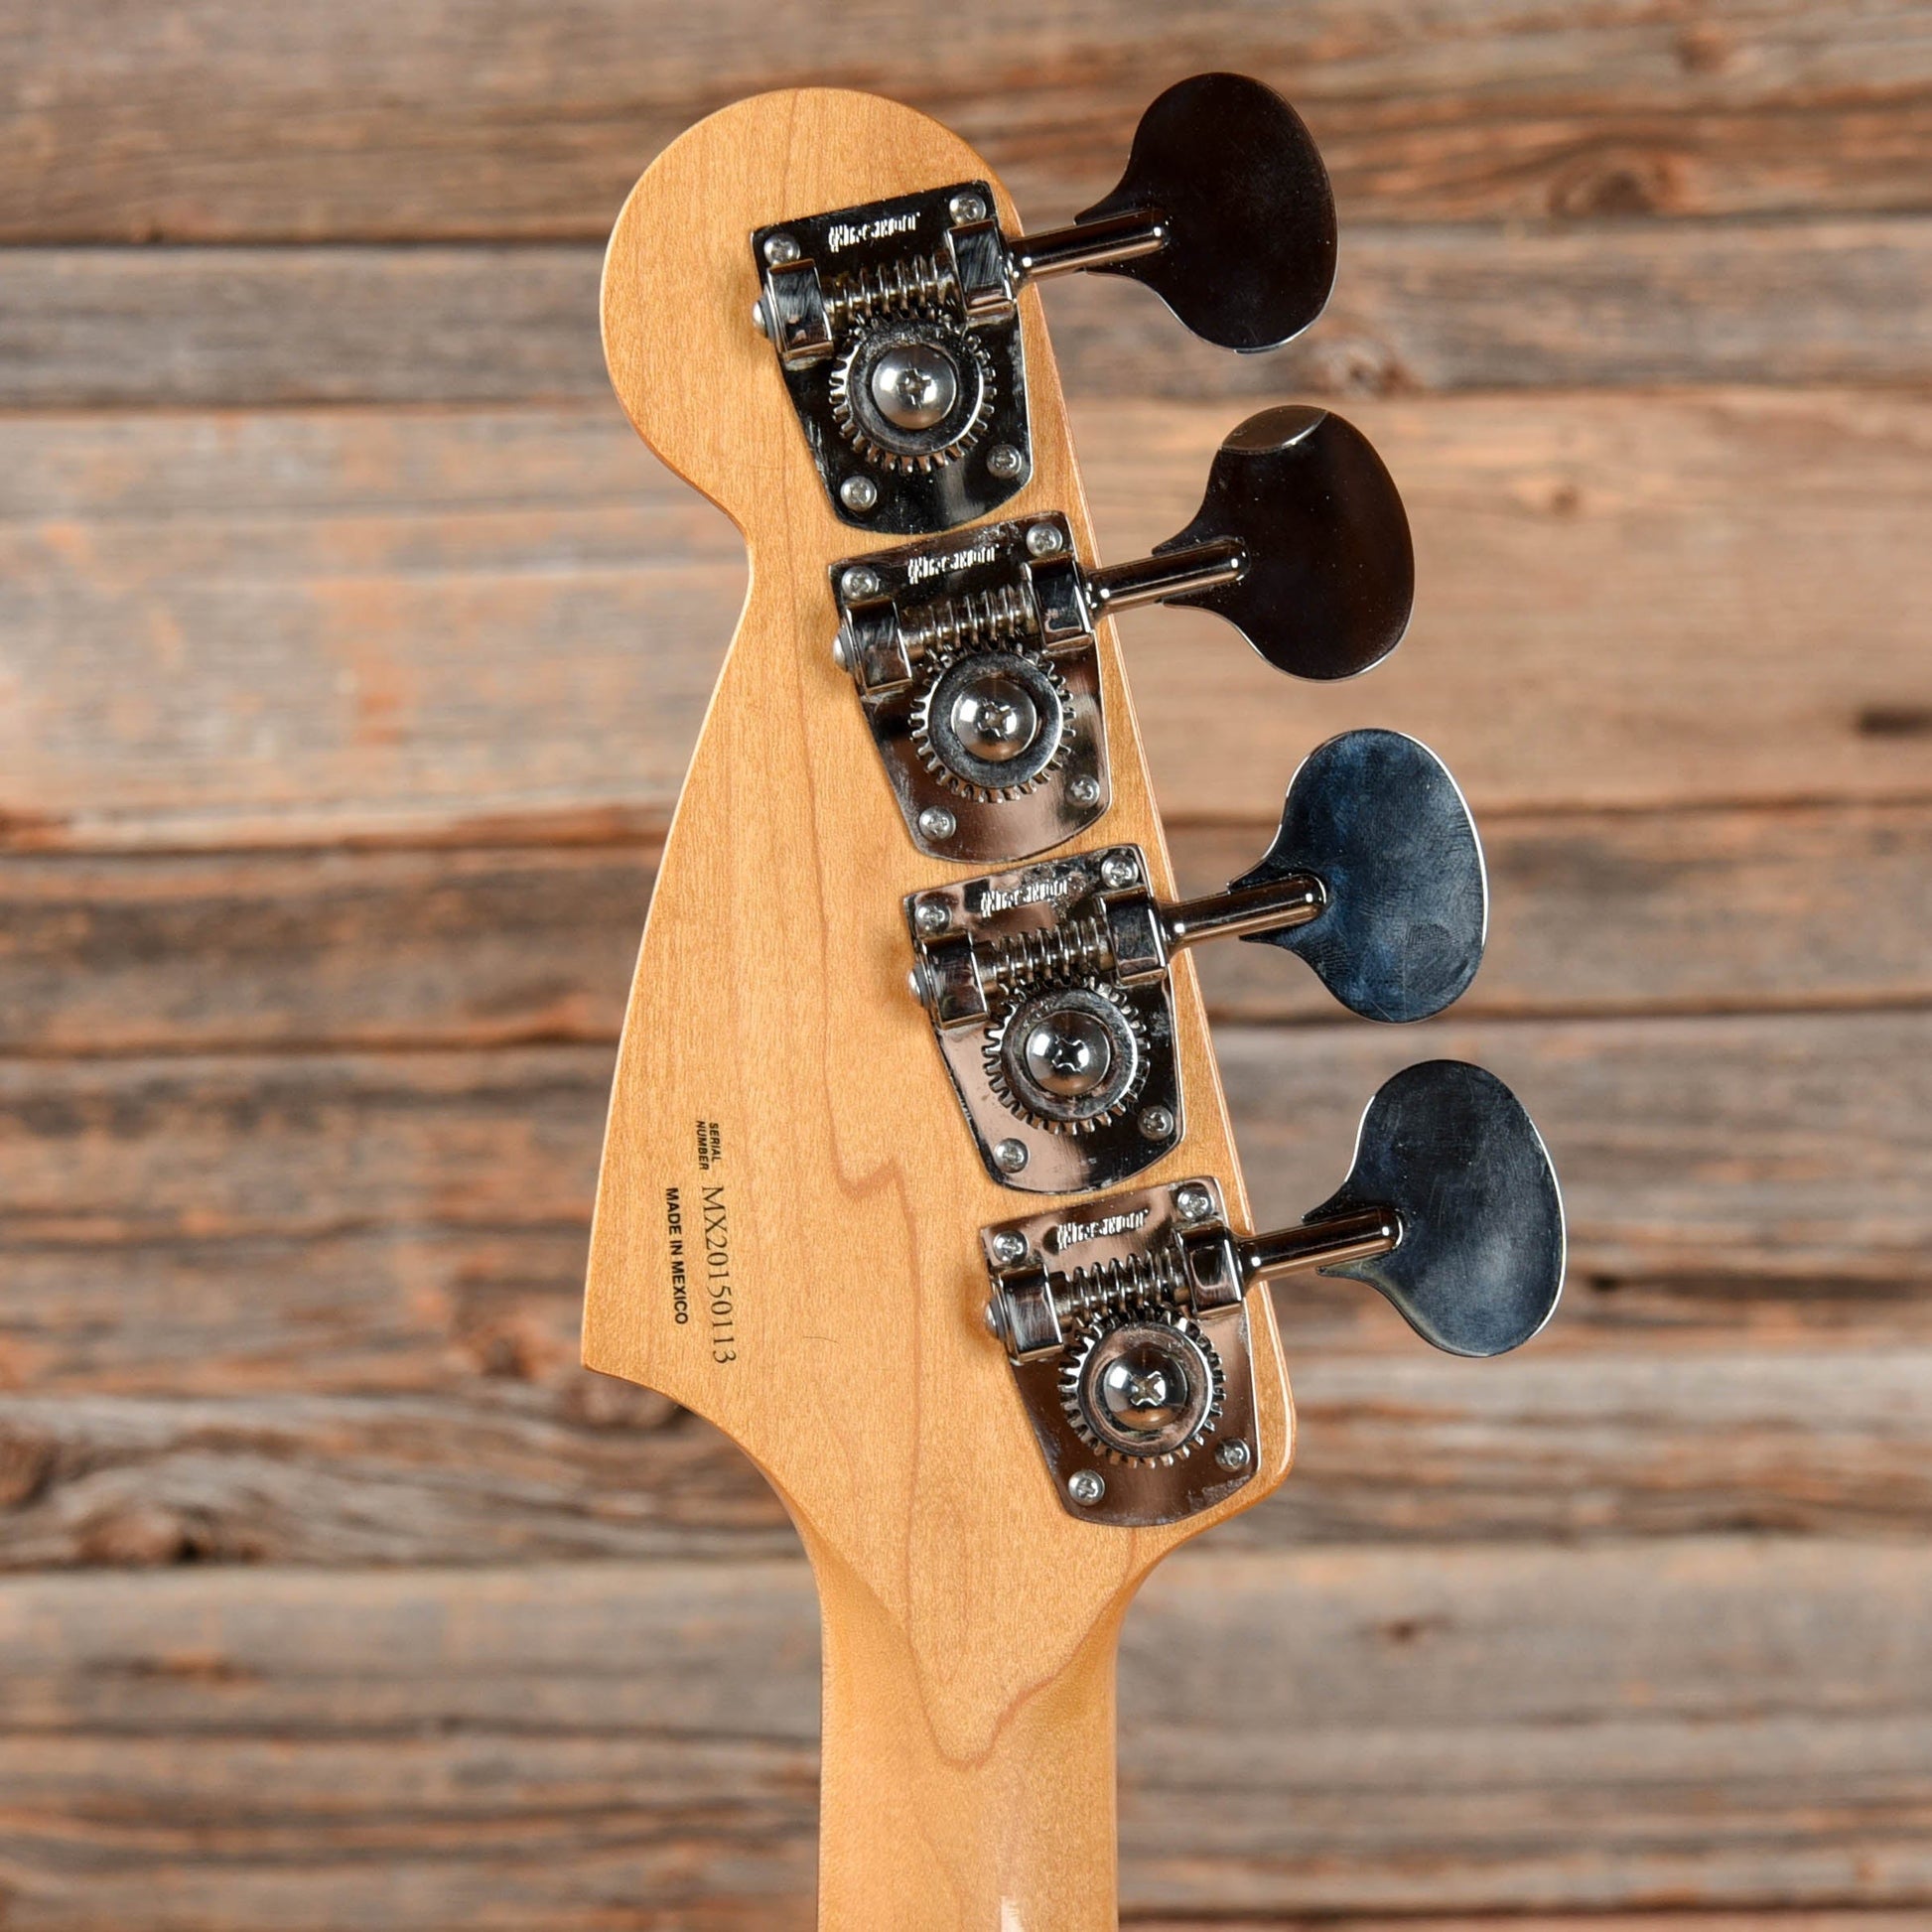 Fender Vintera '60s Mustang Bass Seafoam Green 2020 Bass Guitars / Short Scale